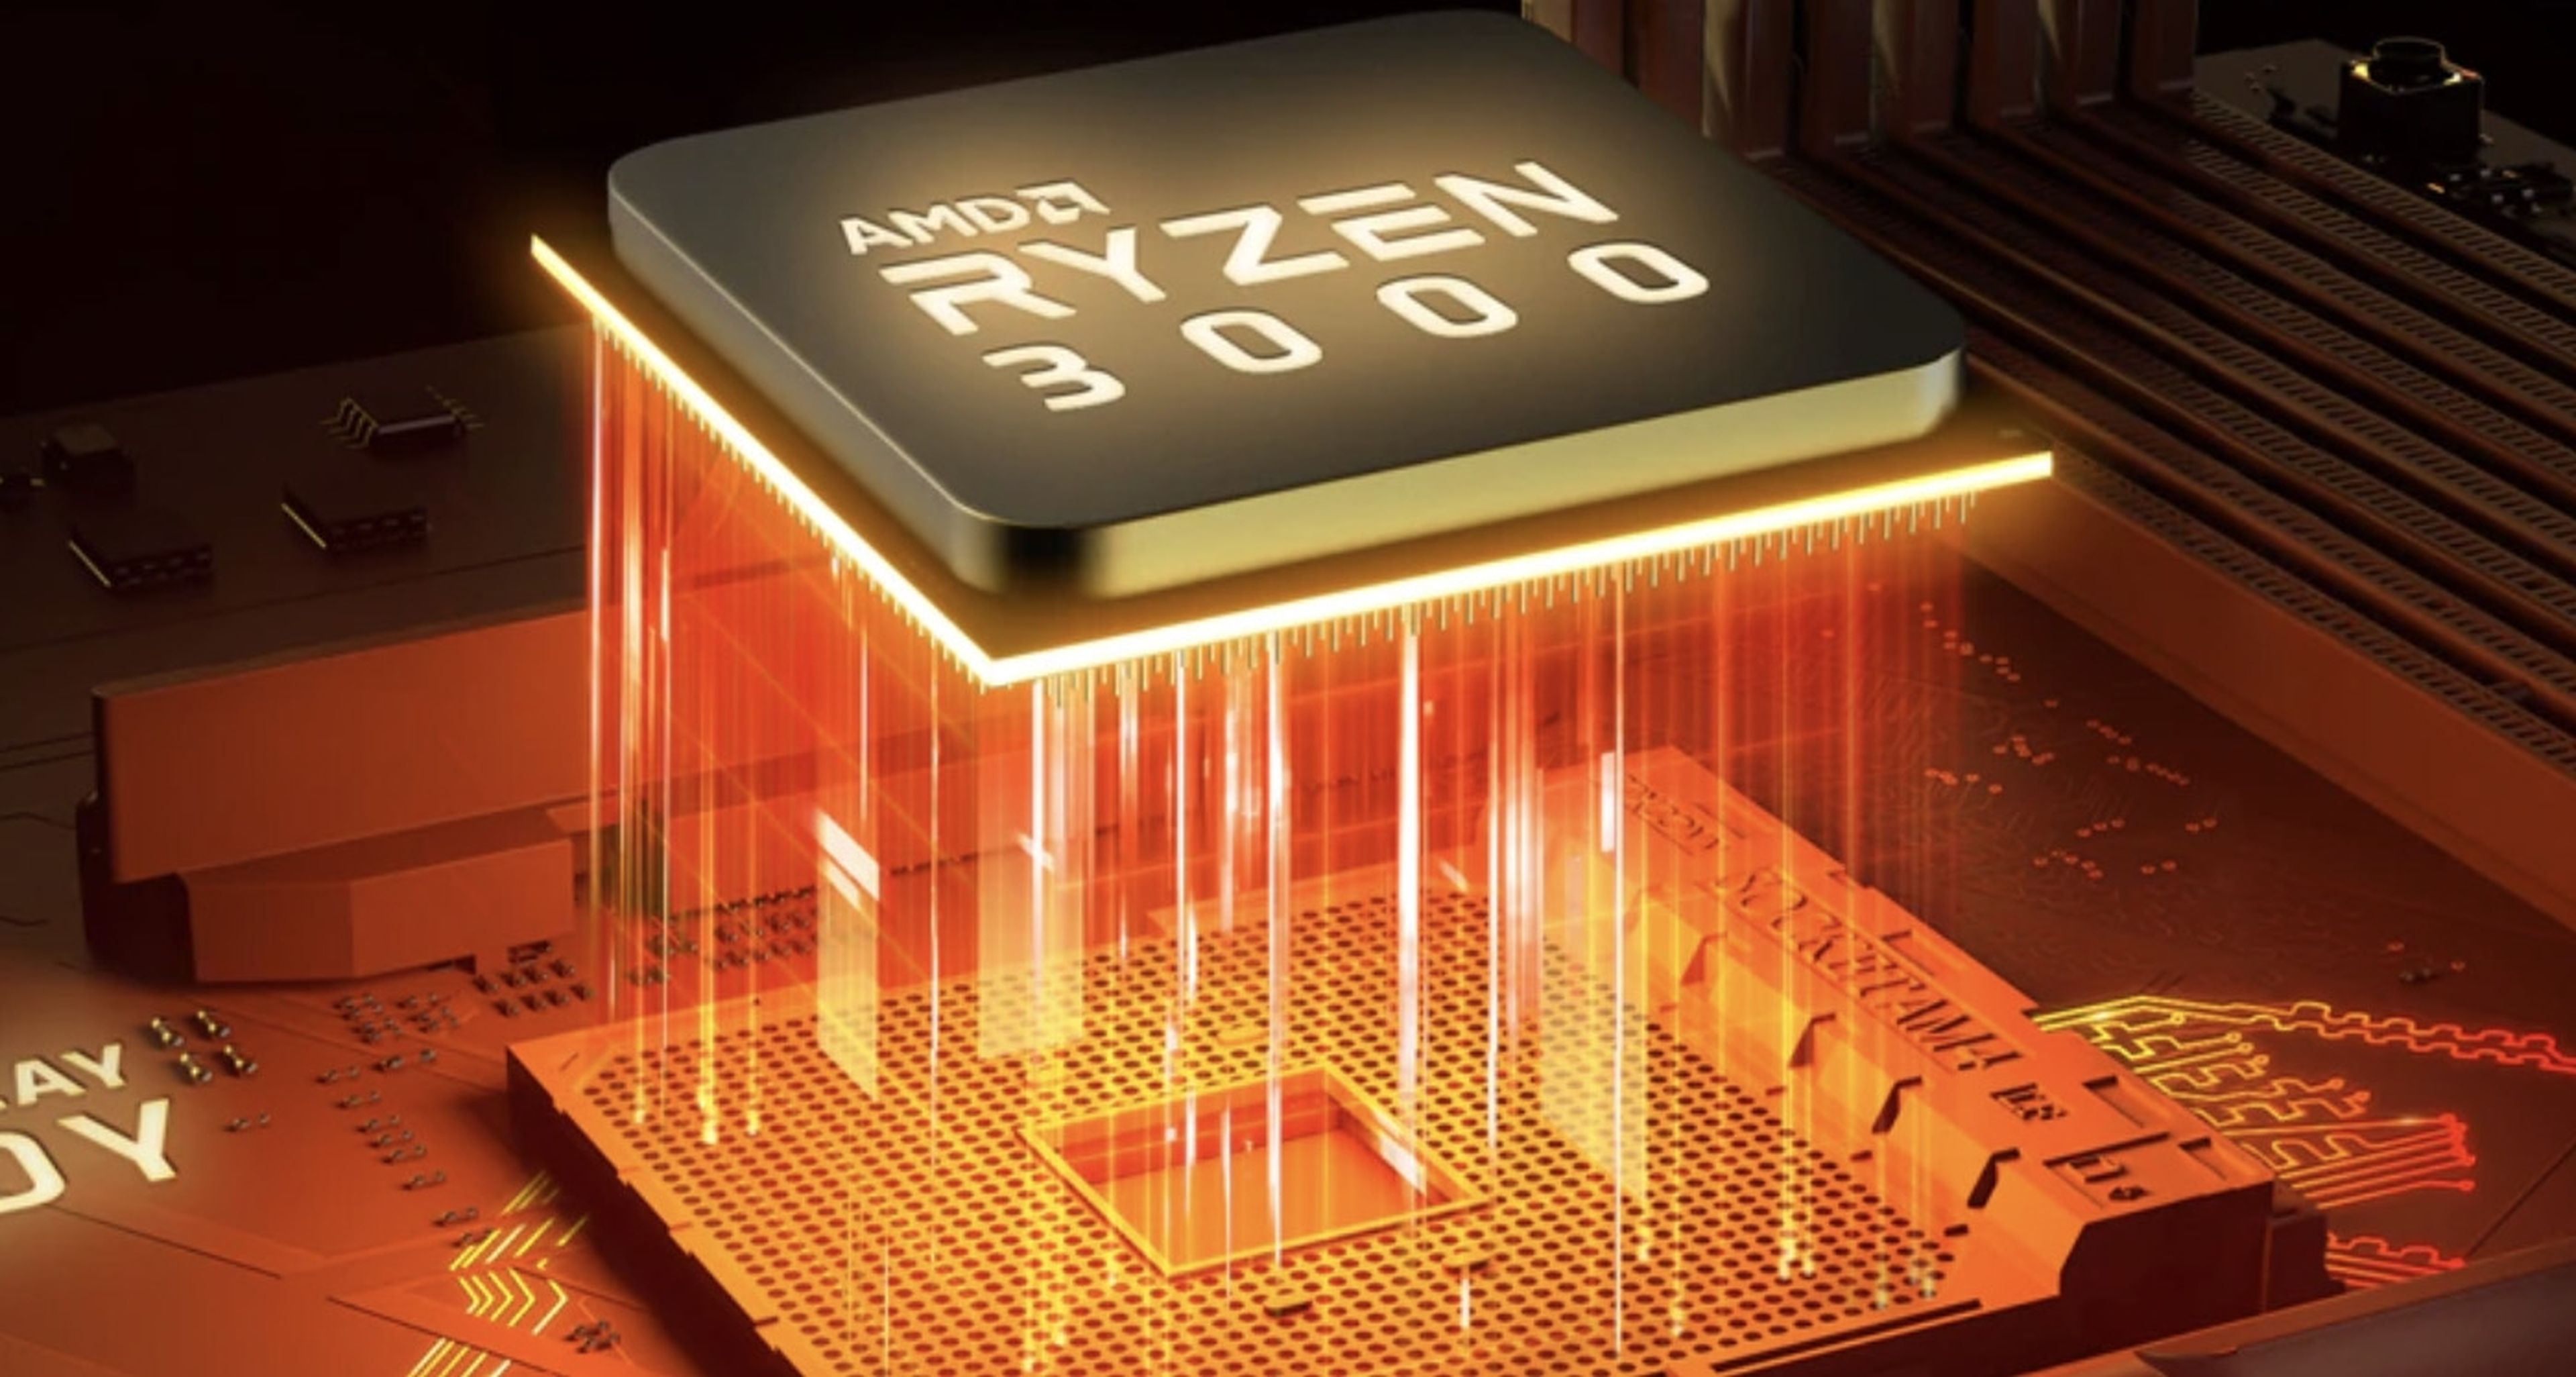 AMD Ryzen 9 3950X, filtrada la primera CPU gaming de la historia con 16 núcleos